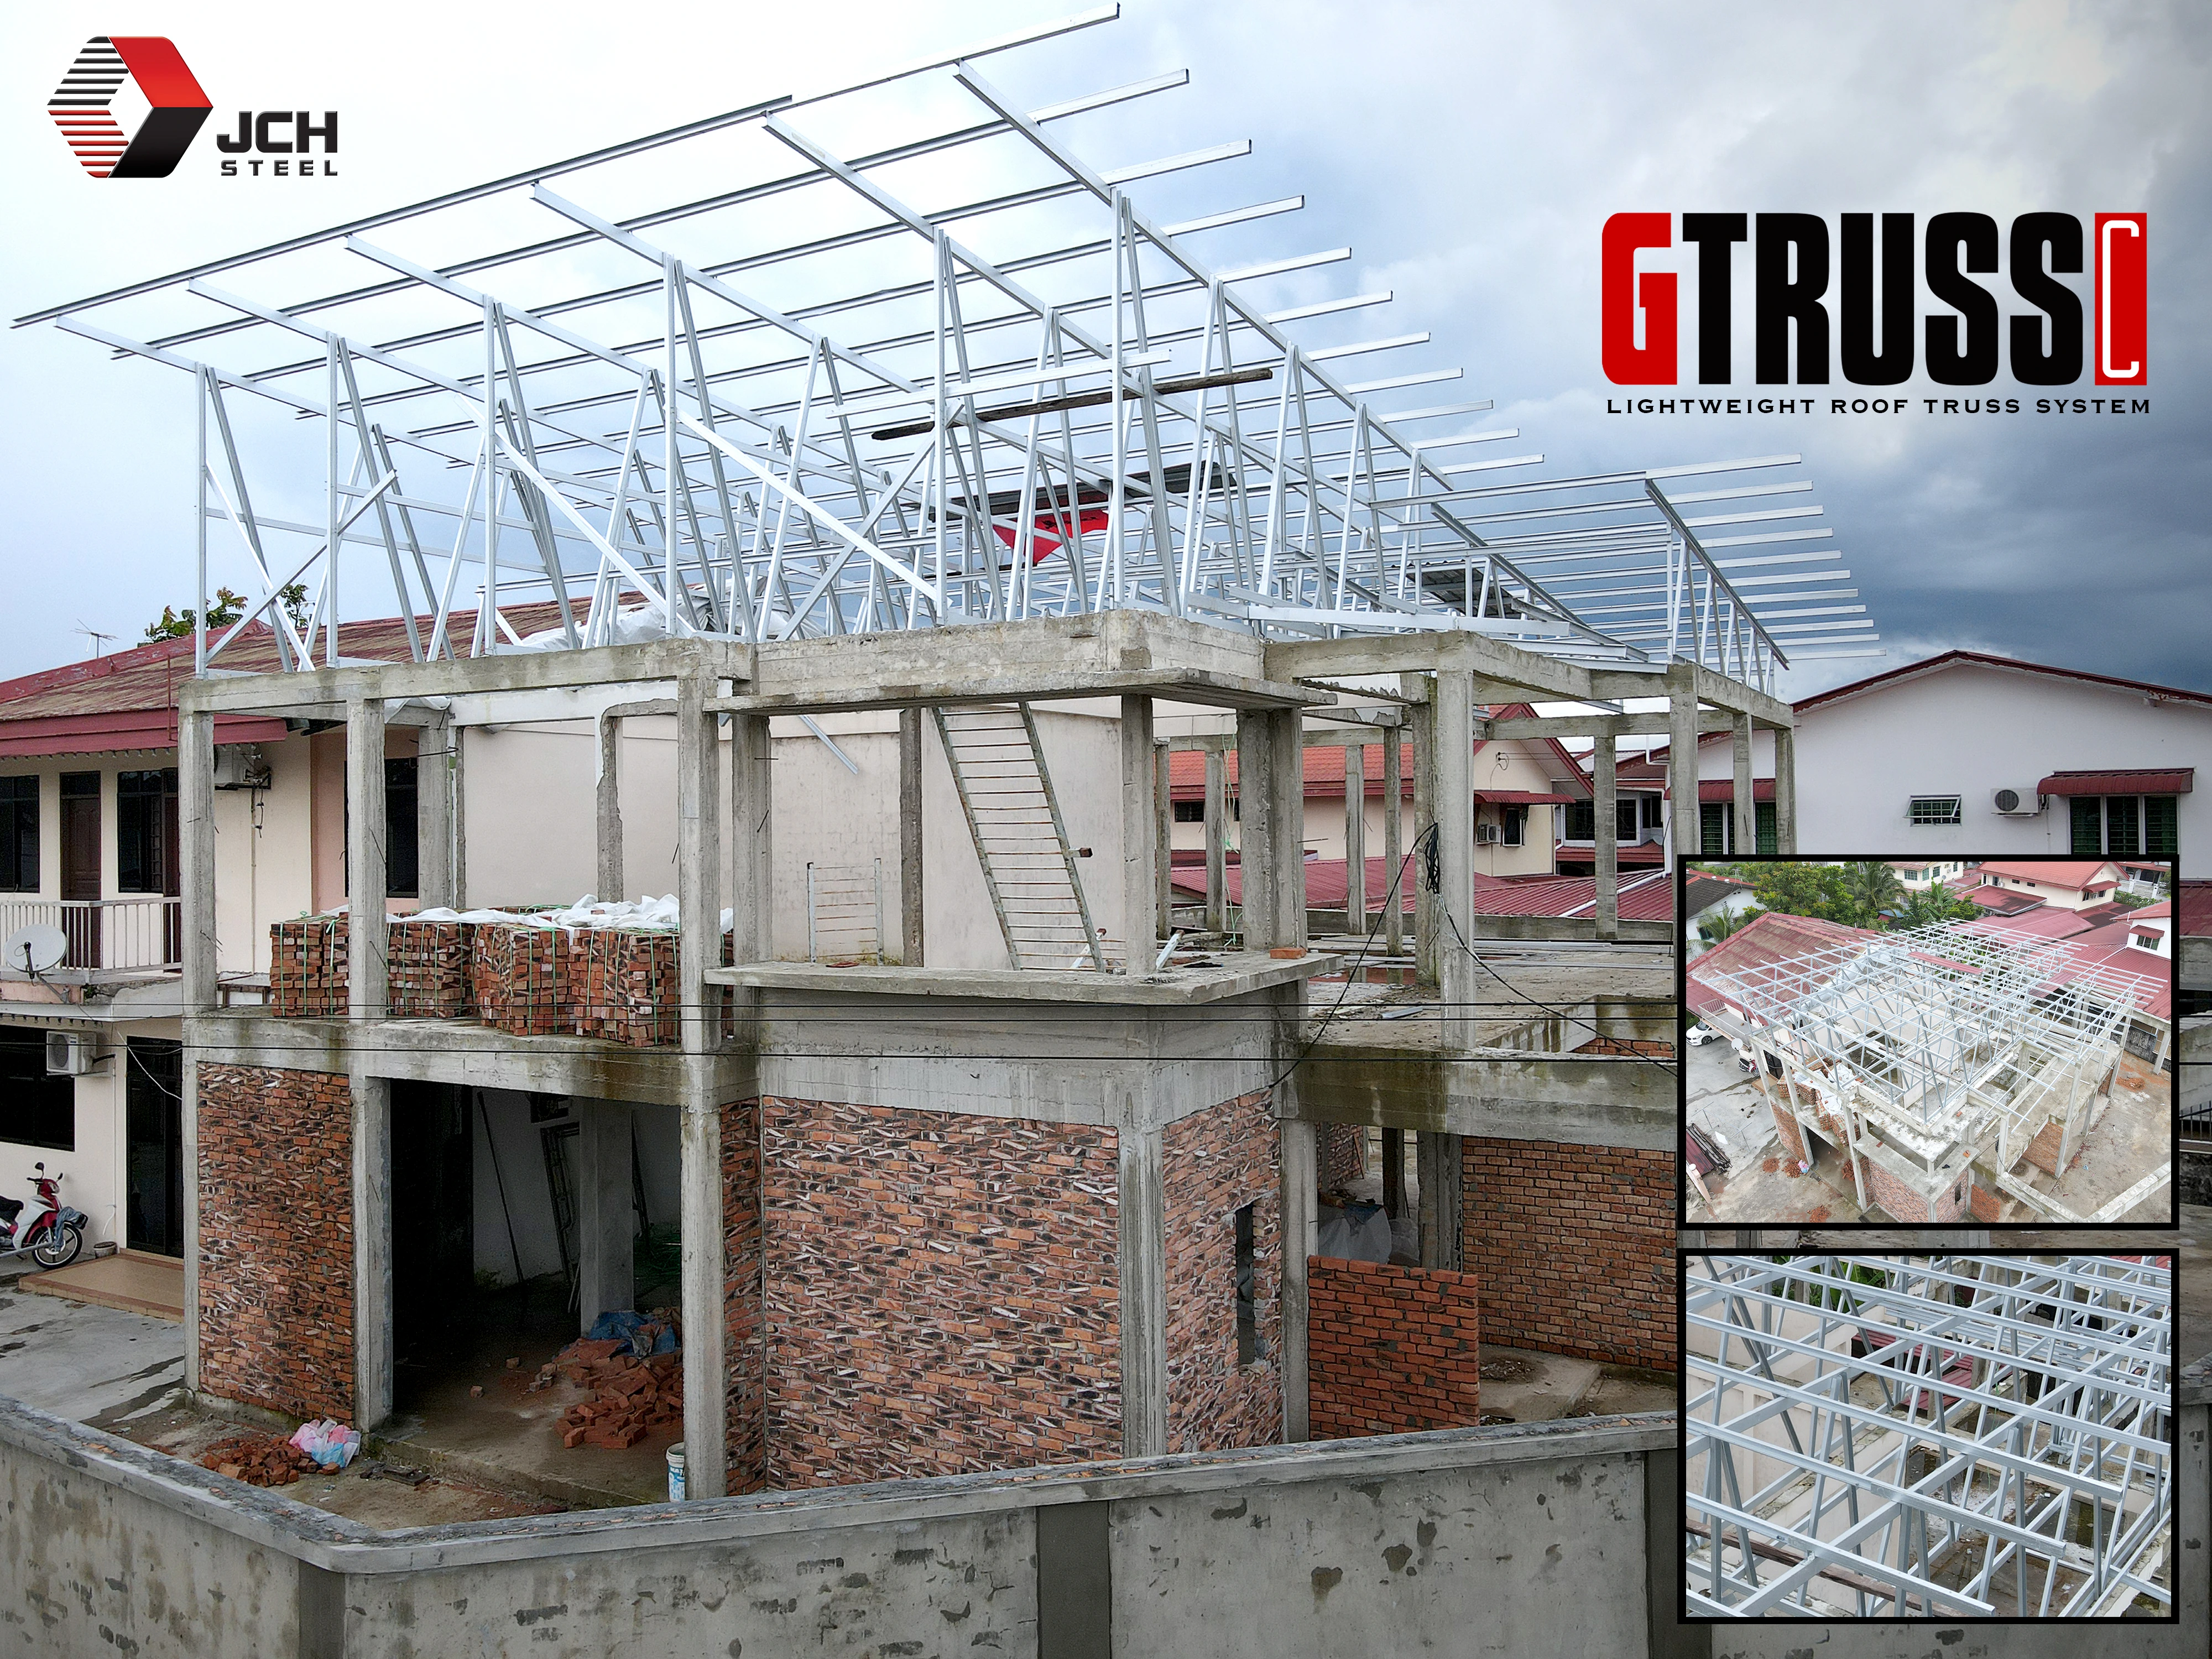 GTRUSS Lightweight Roof Truss System